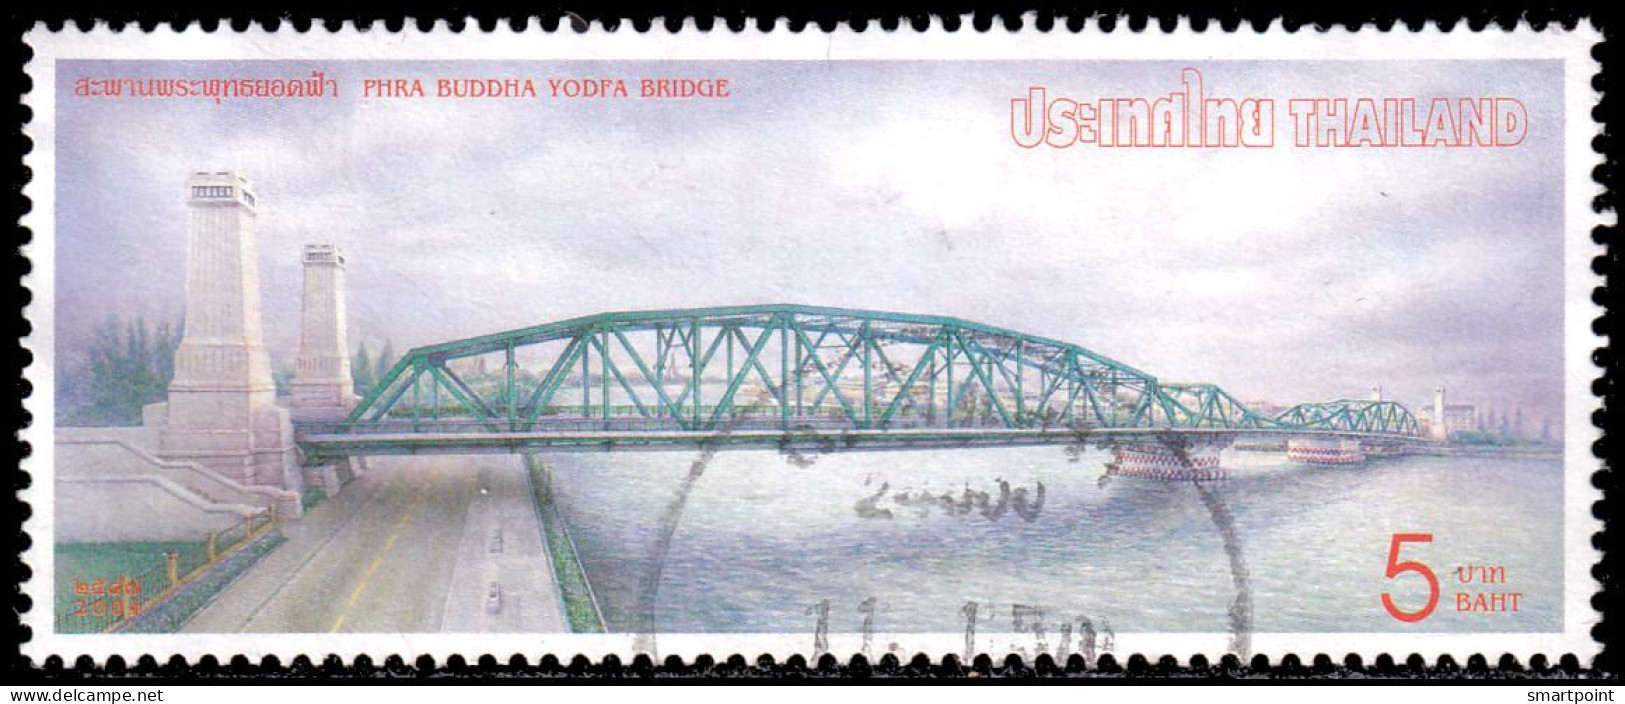 Thailand Stamp 2004 Bridge 5 Baht - Used - Thaïlande